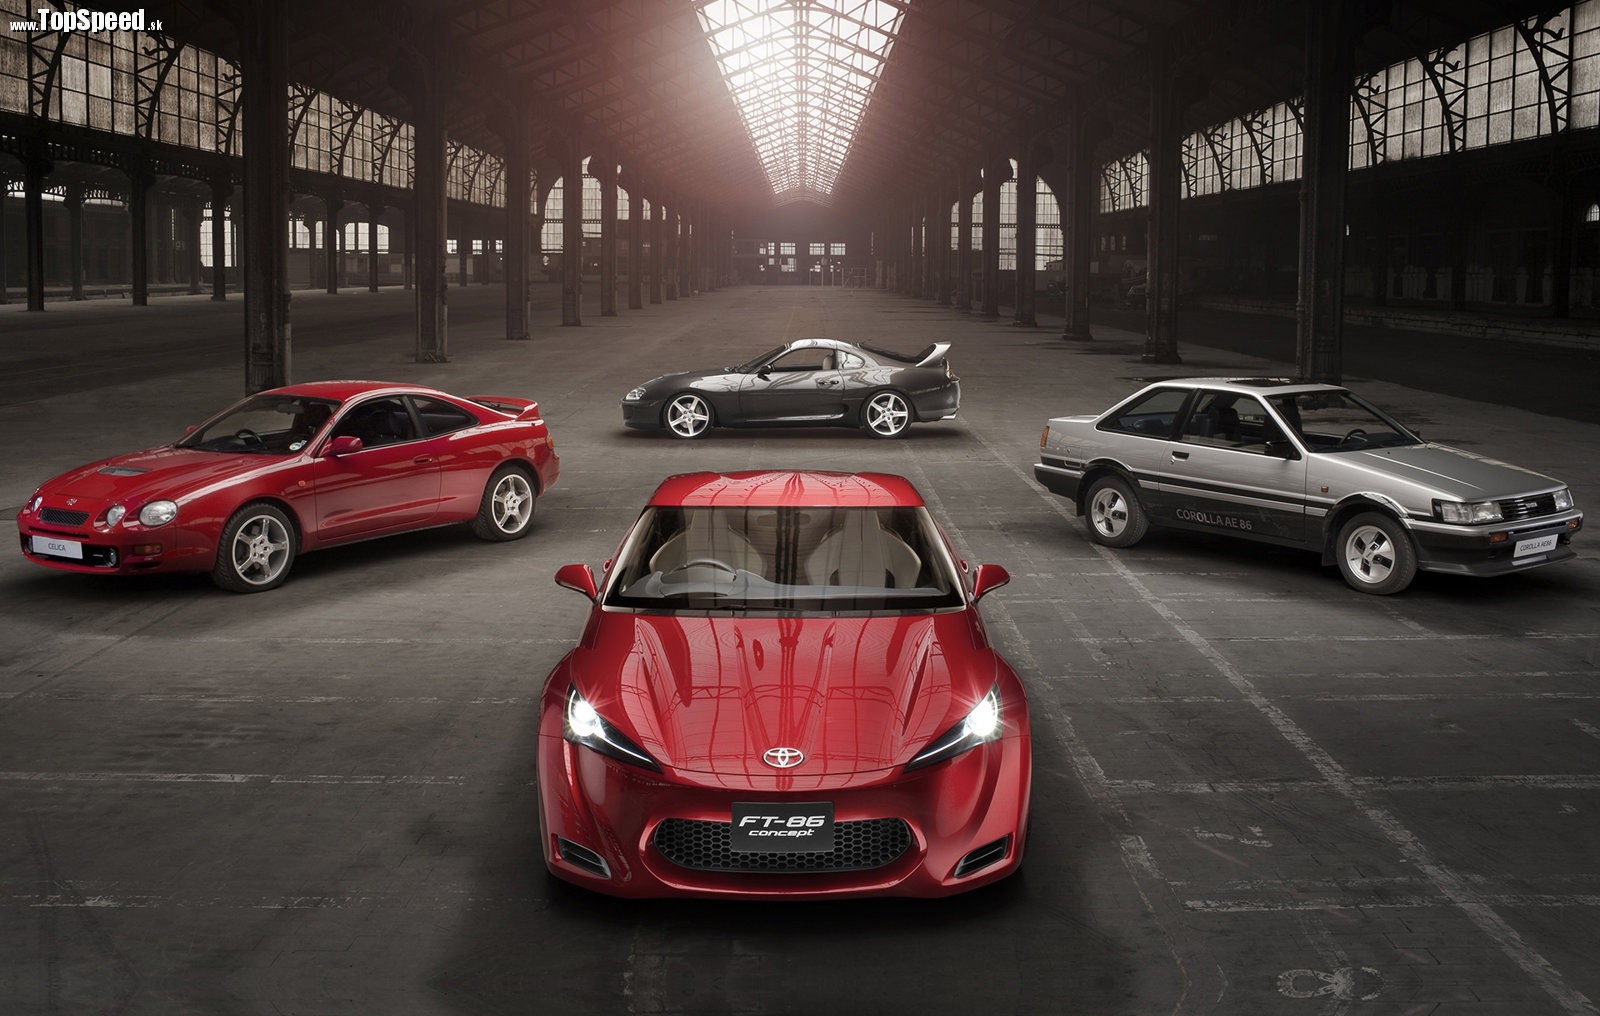 Známe kvarteto športových áut v podaní značky Toyota: Celica GT-four, Supra štvrtej generácie, AE86 a prvý koncept FT-86